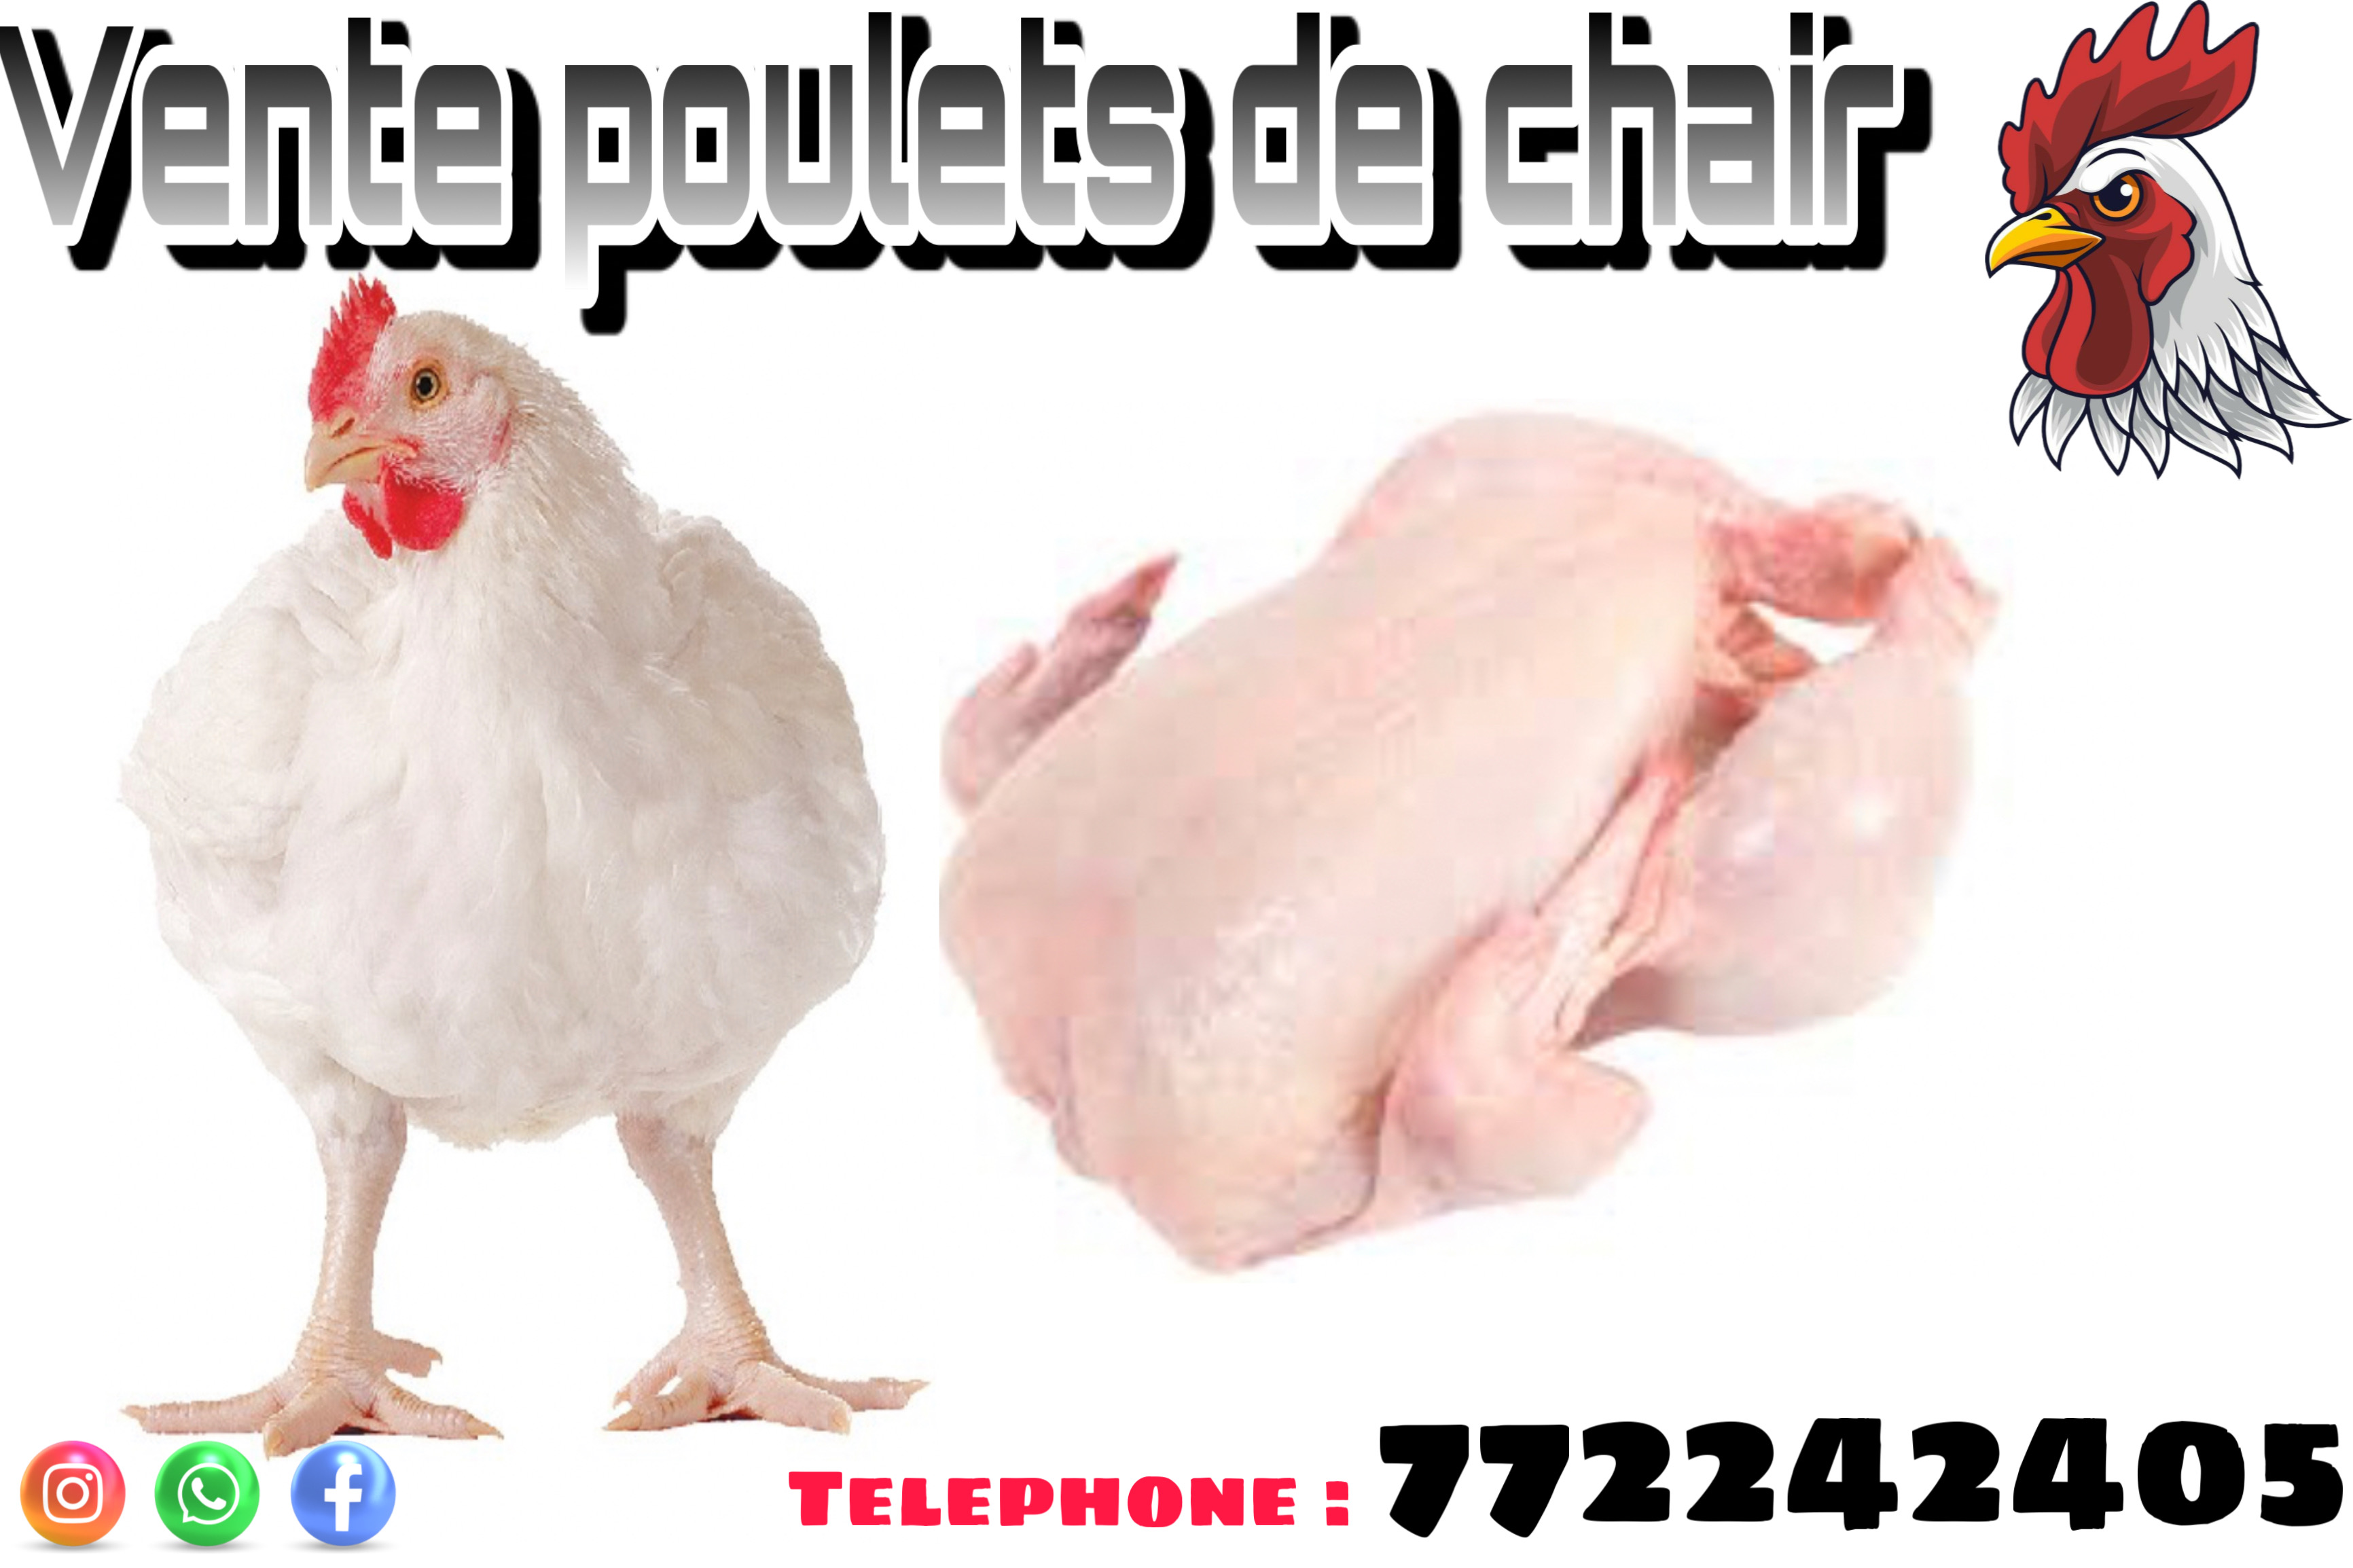 Vente de poulets de chair Poulet de chair à vendre.
Livraison gratuite à partir de 10 poulets achetés.